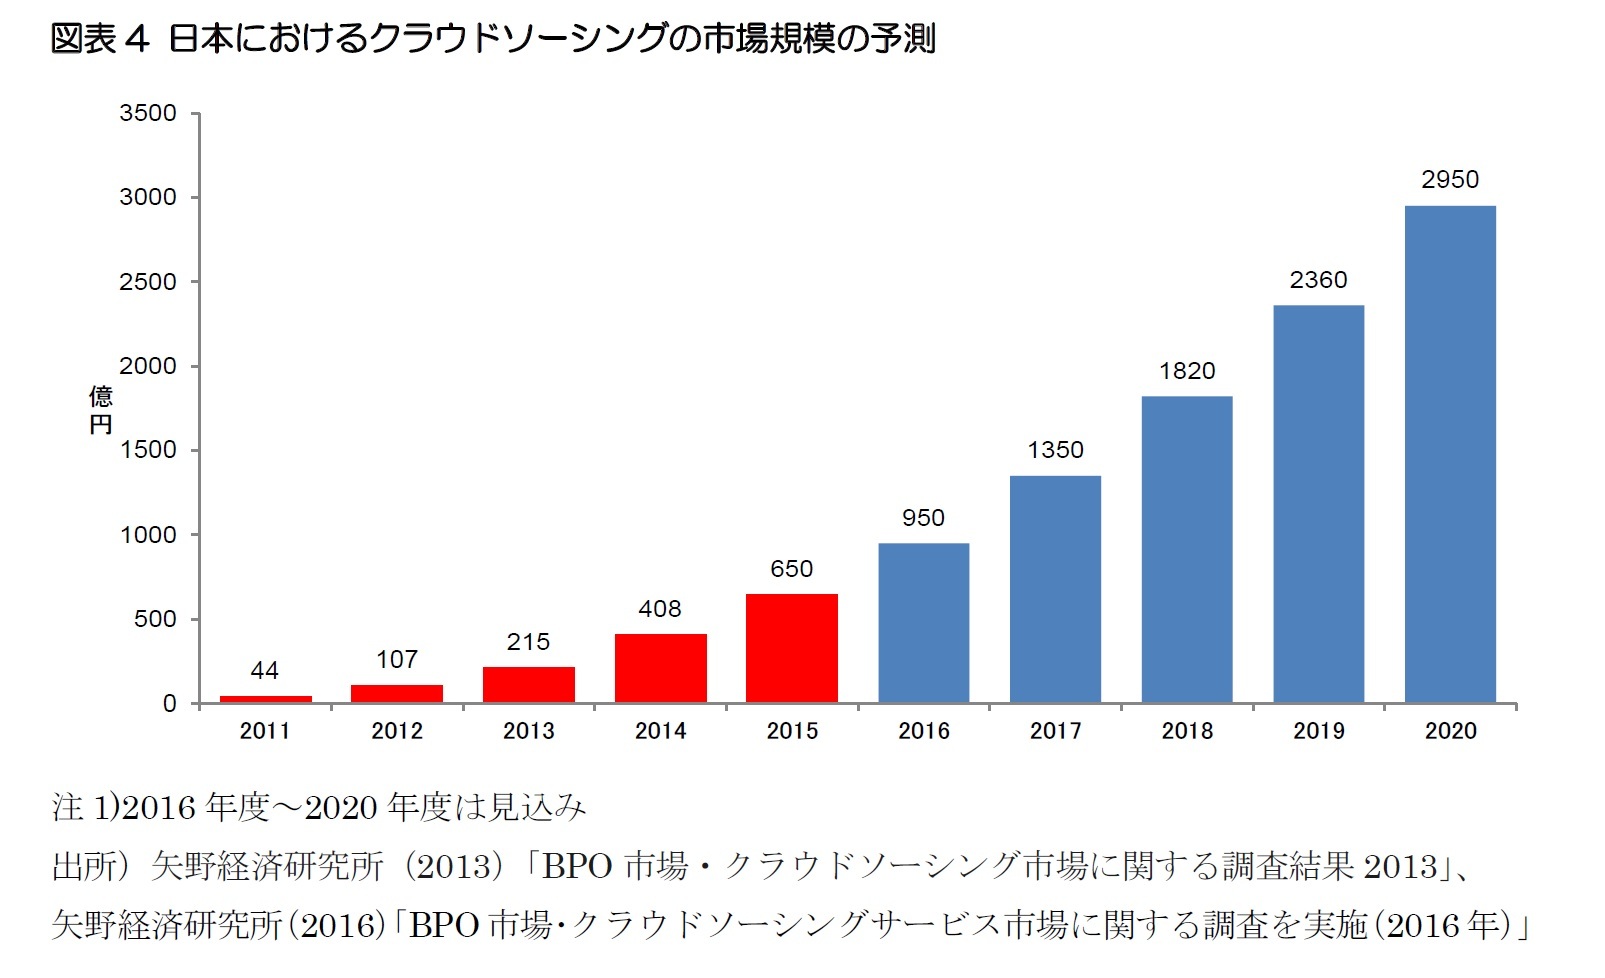 図表4 日本におけるクラウドソーシングの市場規模の予測